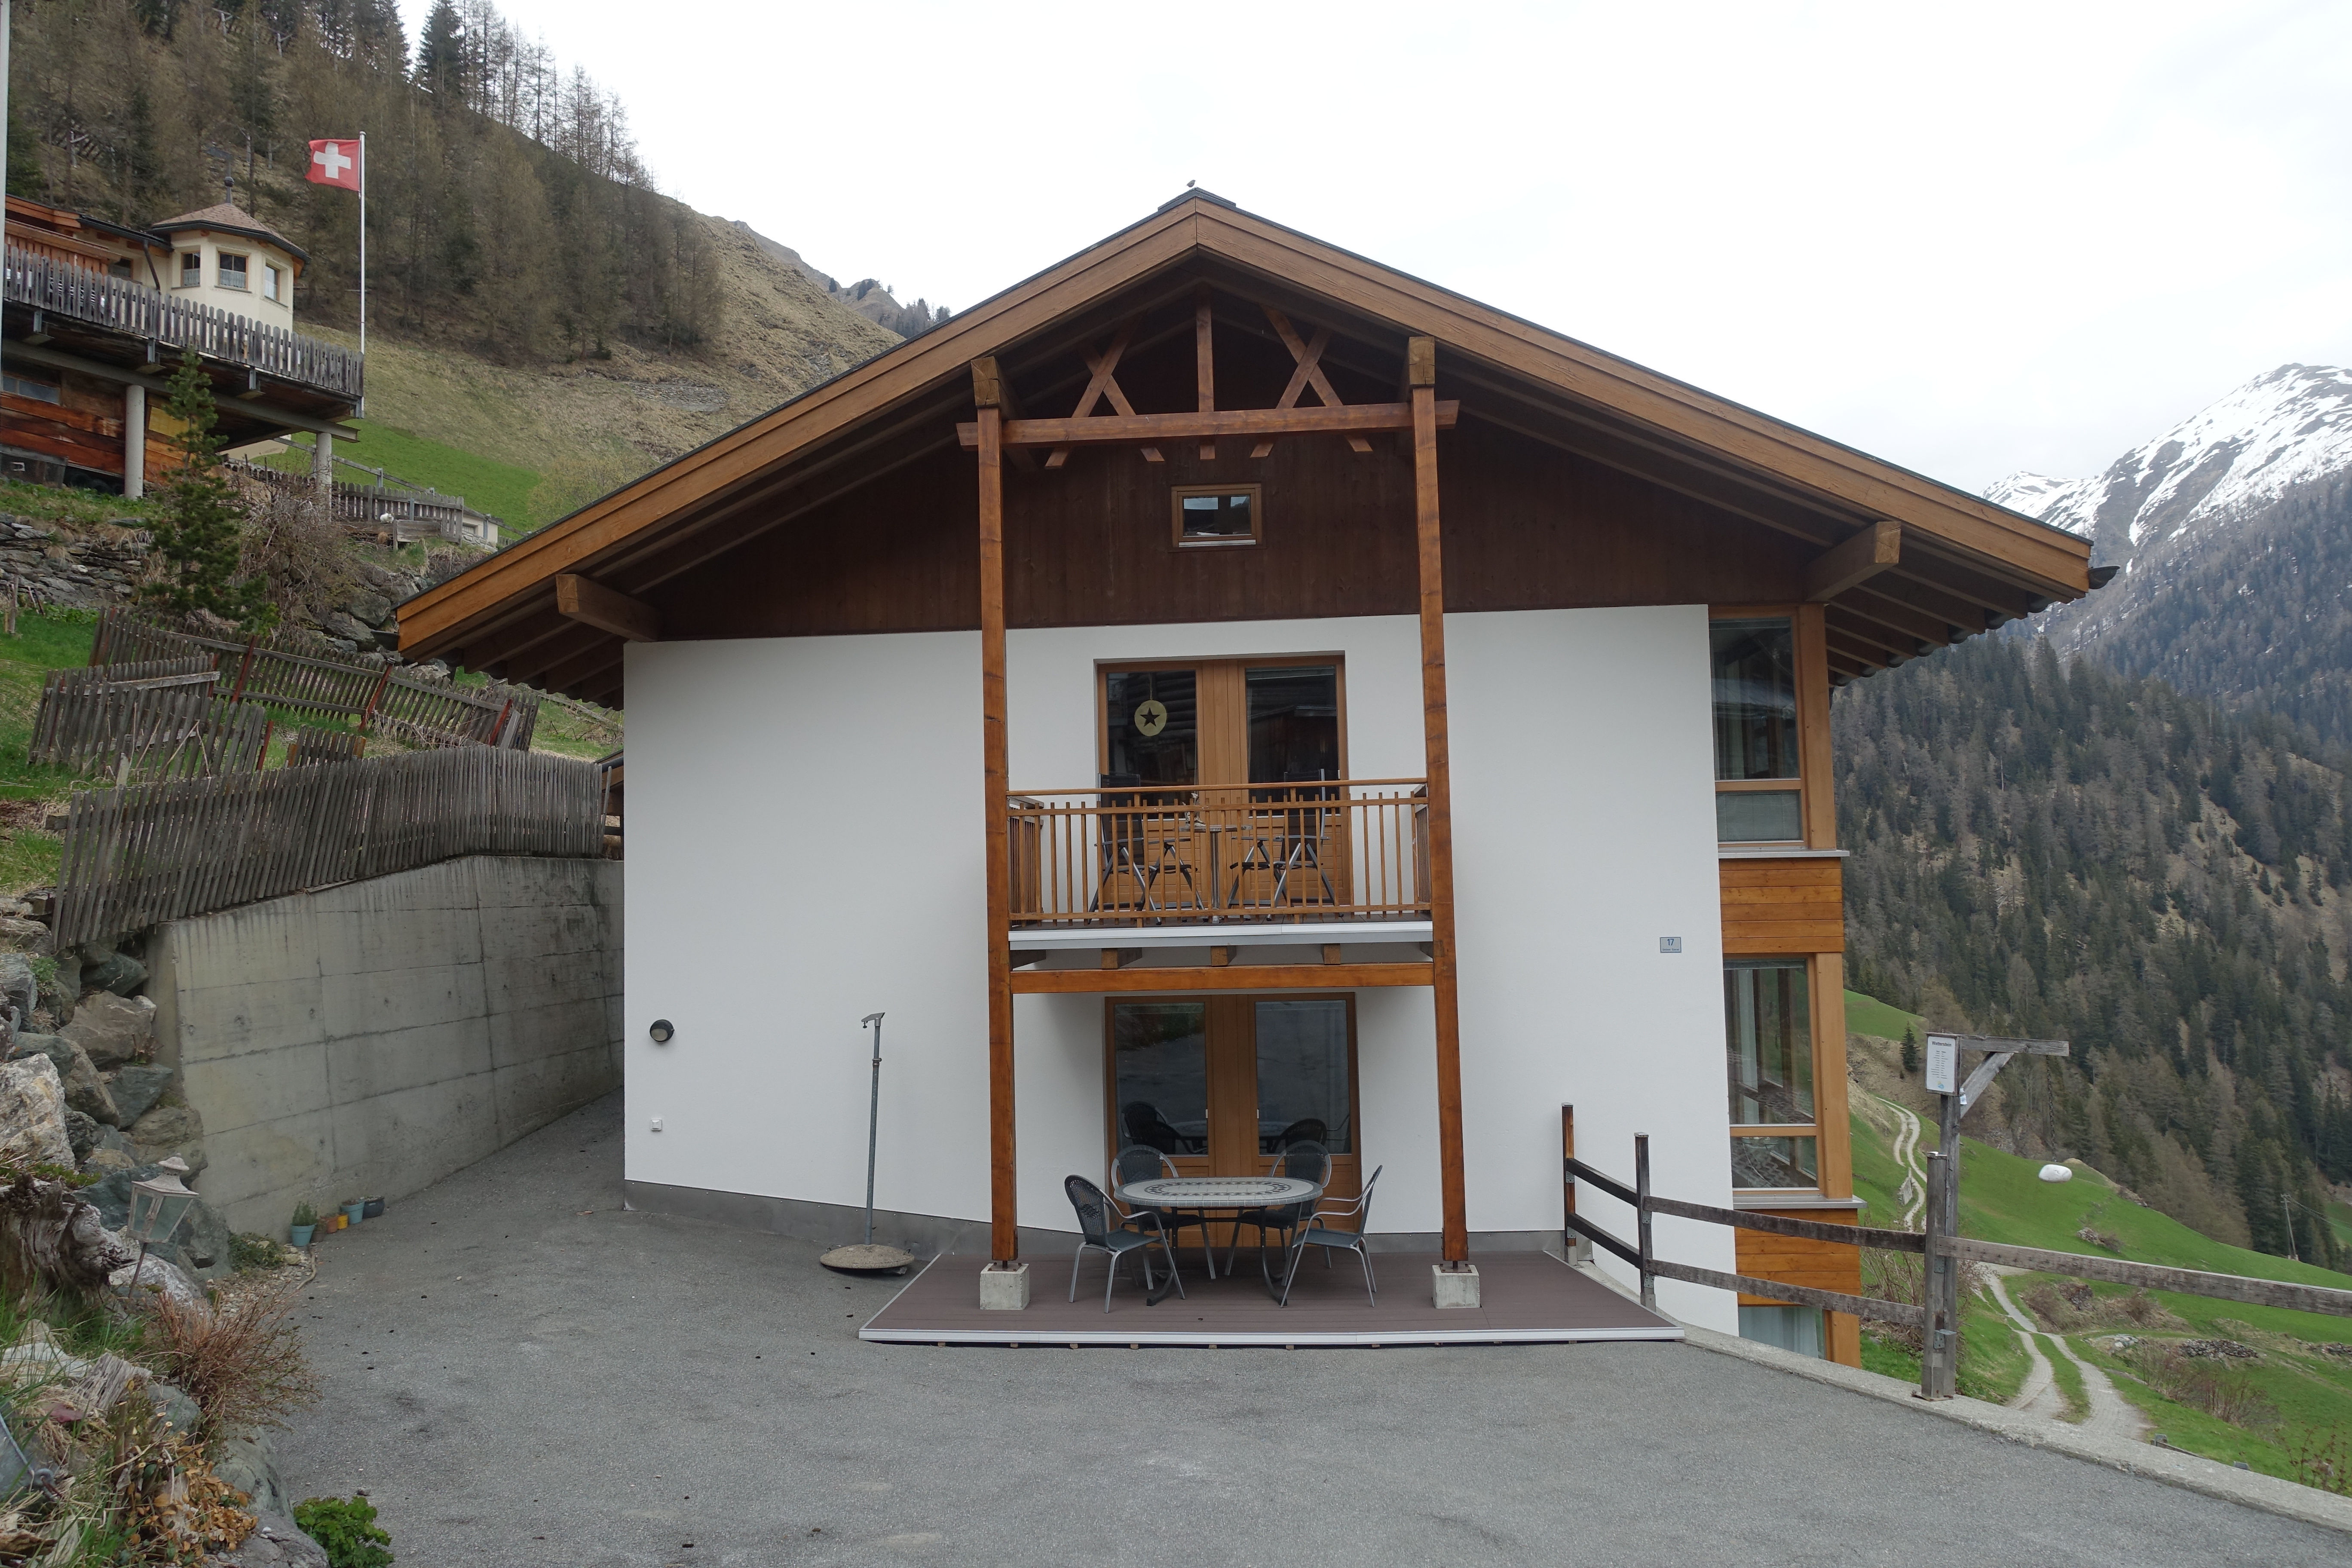 Ferienhaus La Trapla, (Samnaun-Compatsch).  Ferienwohnung in der Schweiz